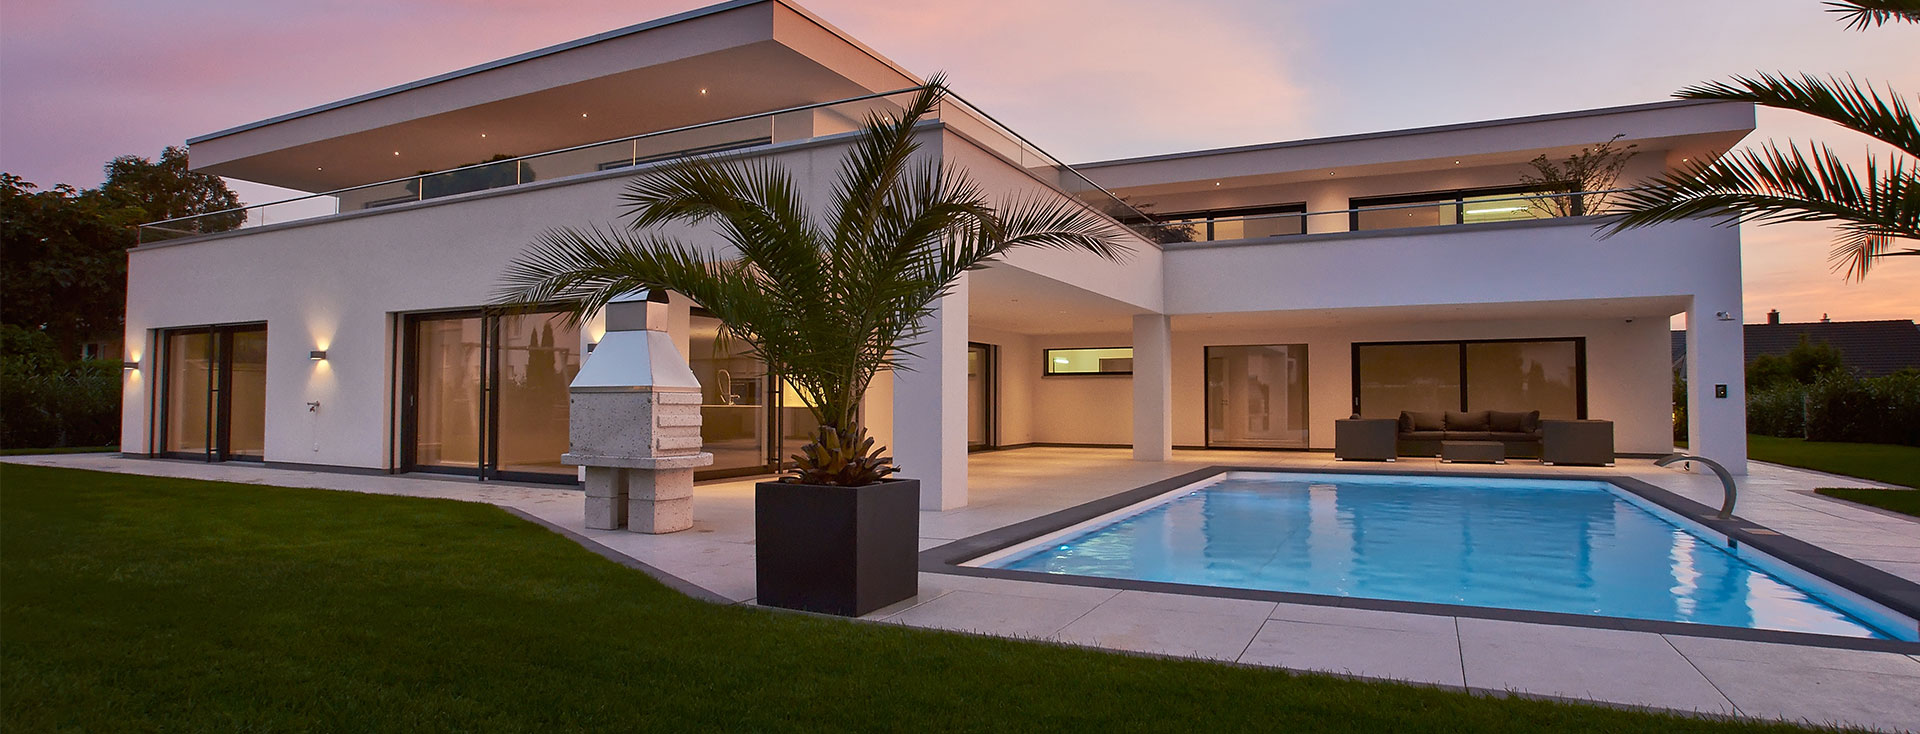 Casa indipendente con piscina, elementi di grandi finestre